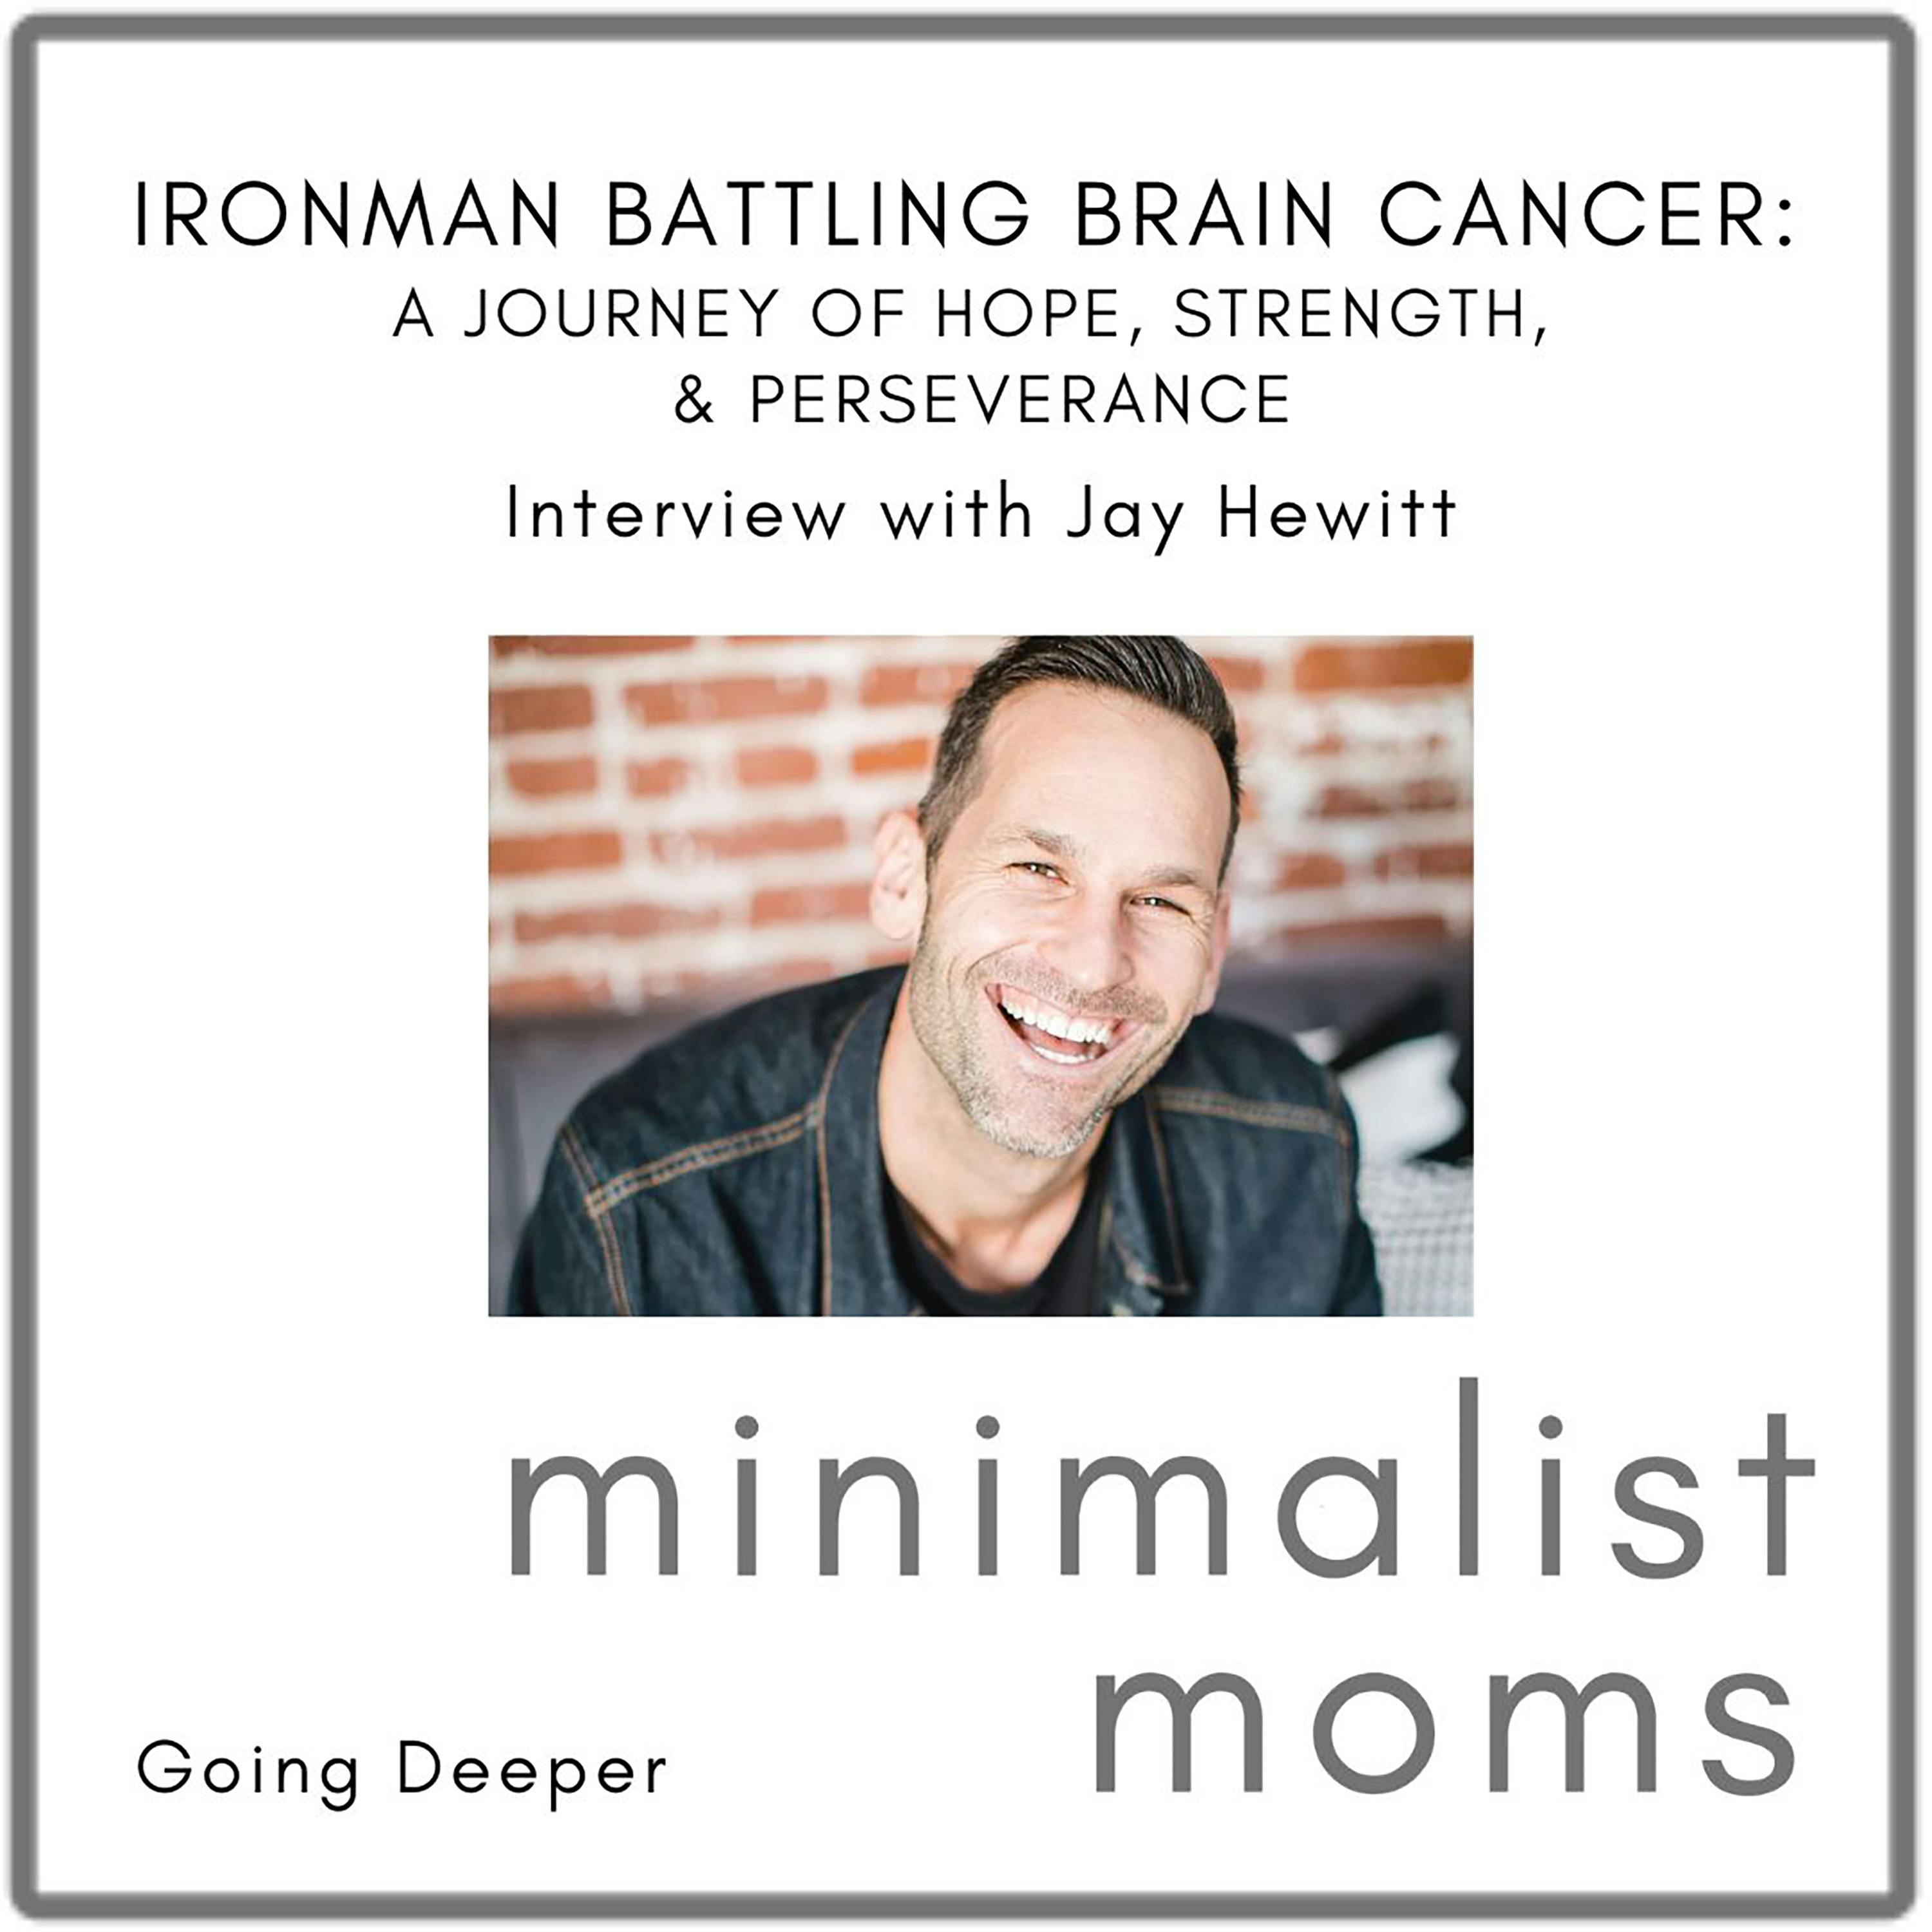 Going Deeper : Ironman Battling Brain Cancer - Jay Hewitt's Journey of Hope, Strength, & Perseverance